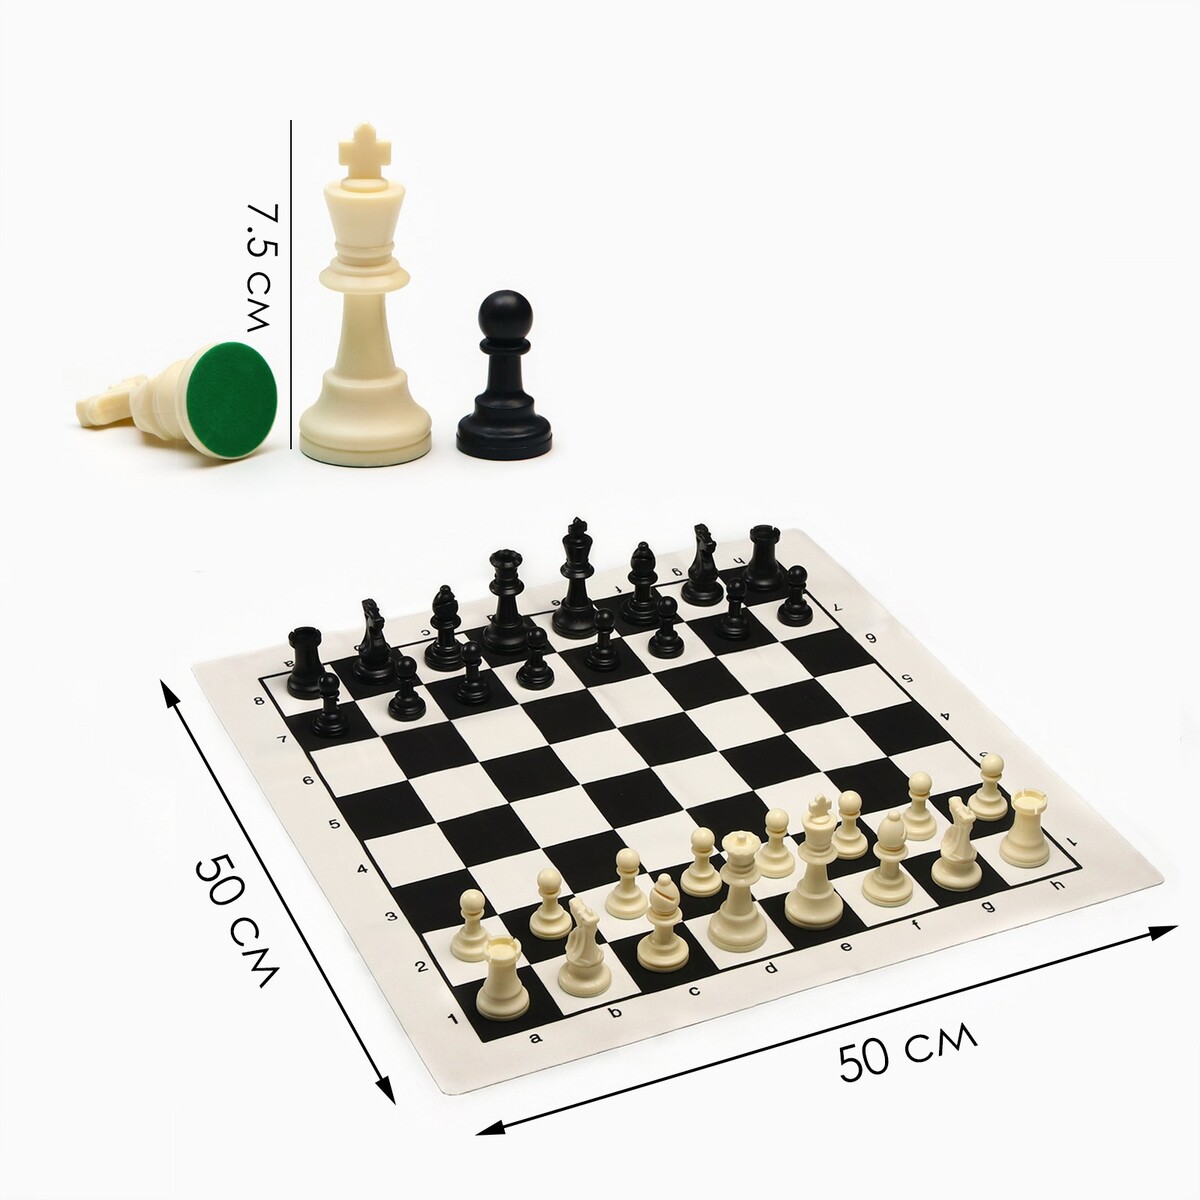 Шахматы в пакете, фигуры (пешка h-4.5 см, ферзь h-7.5 см), поле 50 х 50 см федор черенков живу только на поле рабинер и